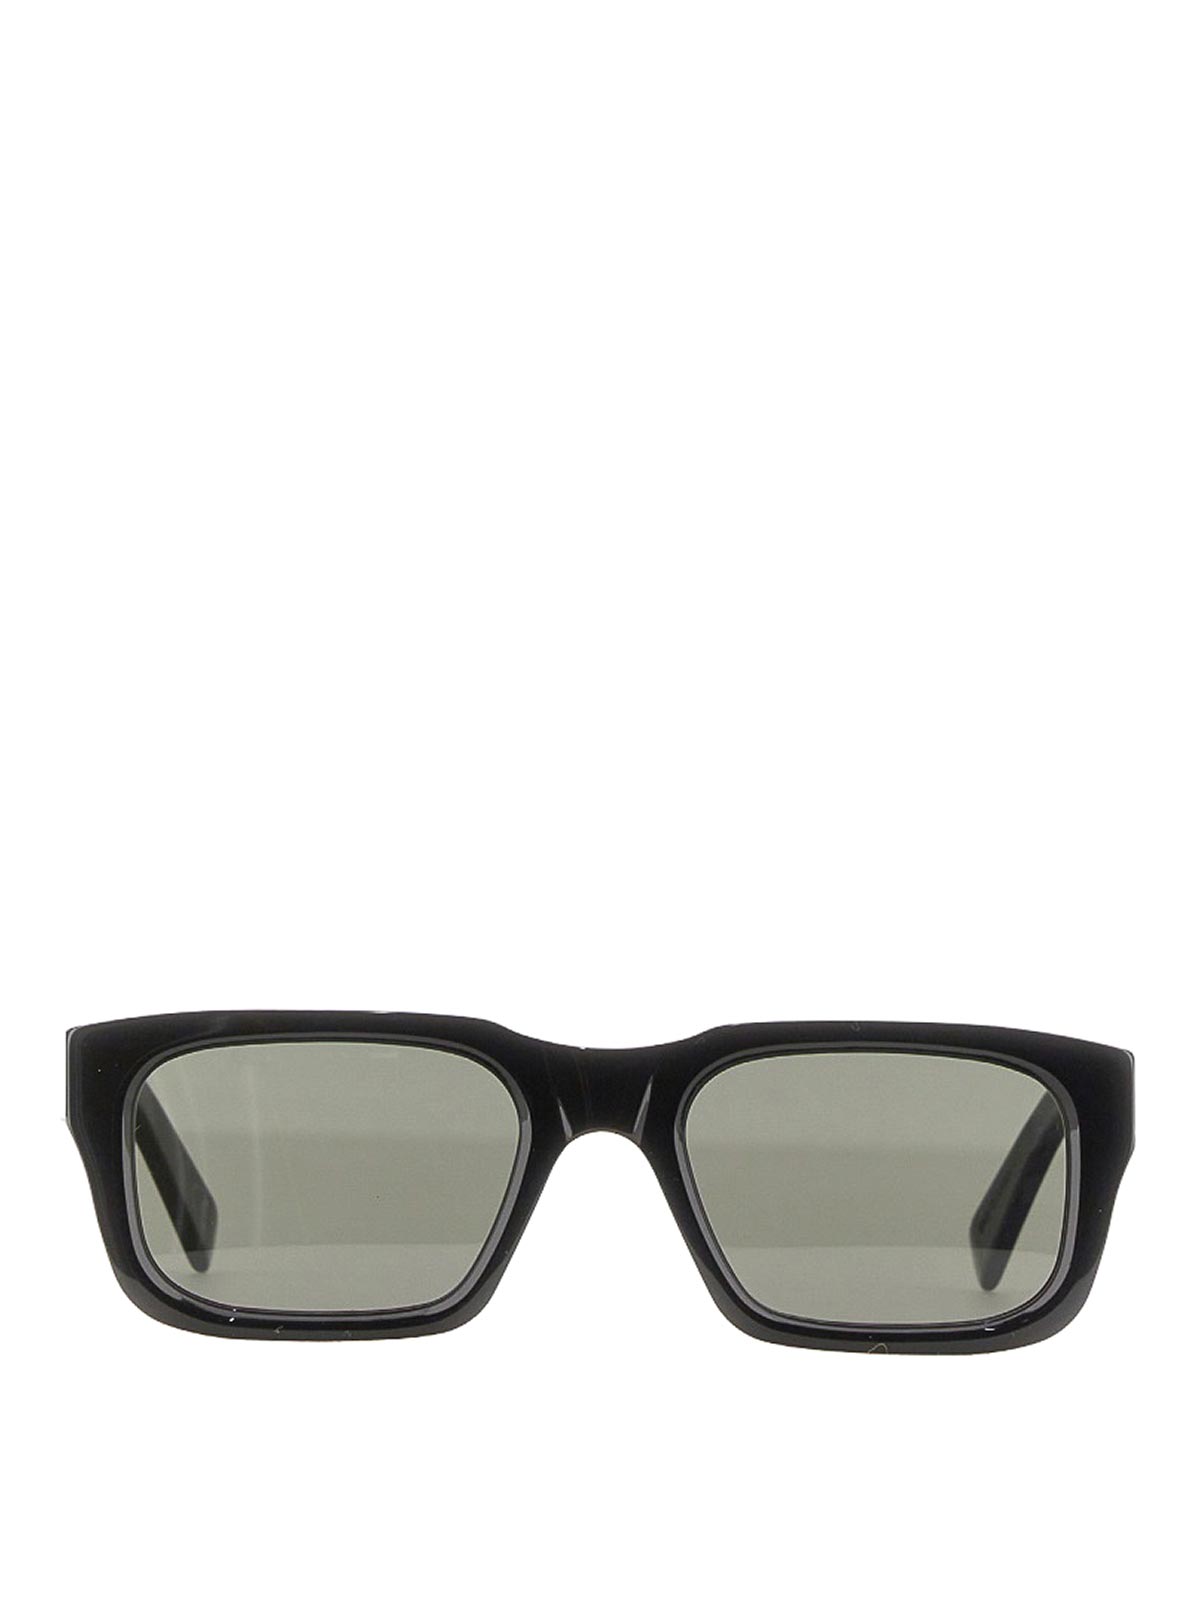 Retro Super Future Augustus Sunglasses In Black